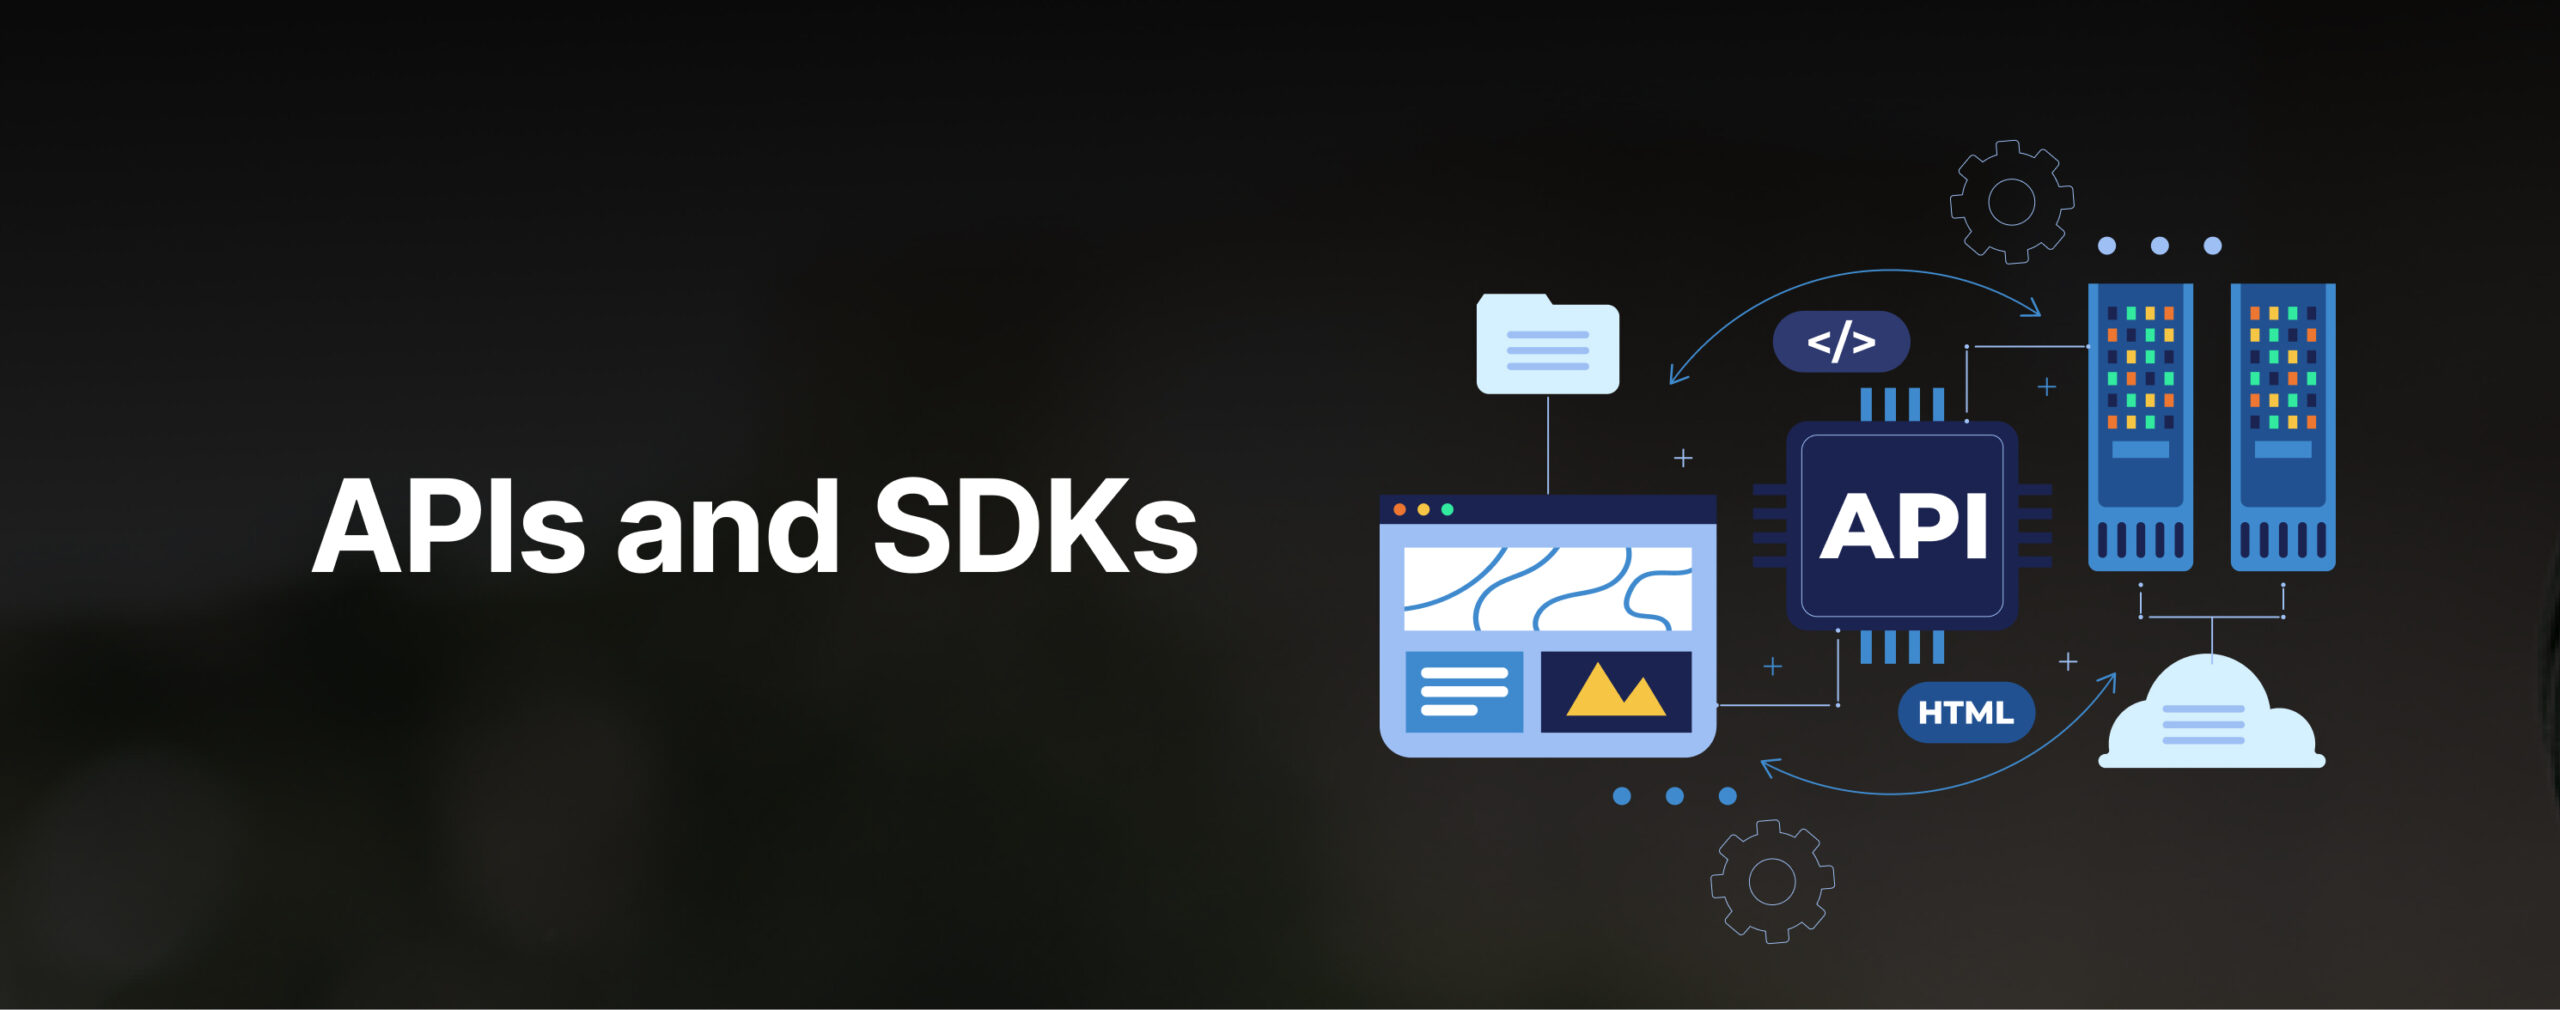 APIs and SDKs